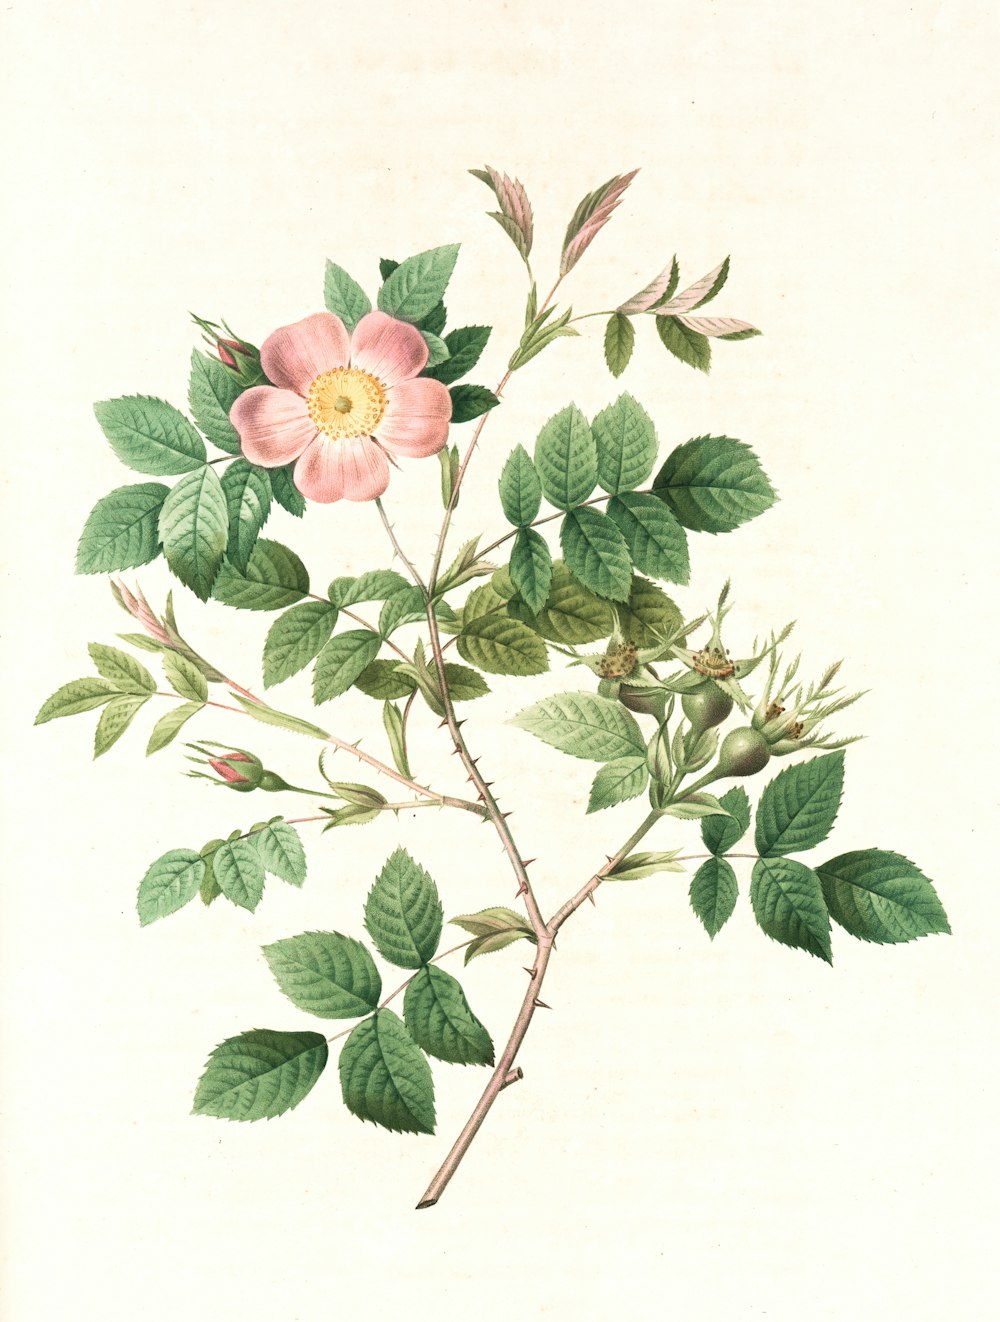 Ilustración de flores rosas y verdes